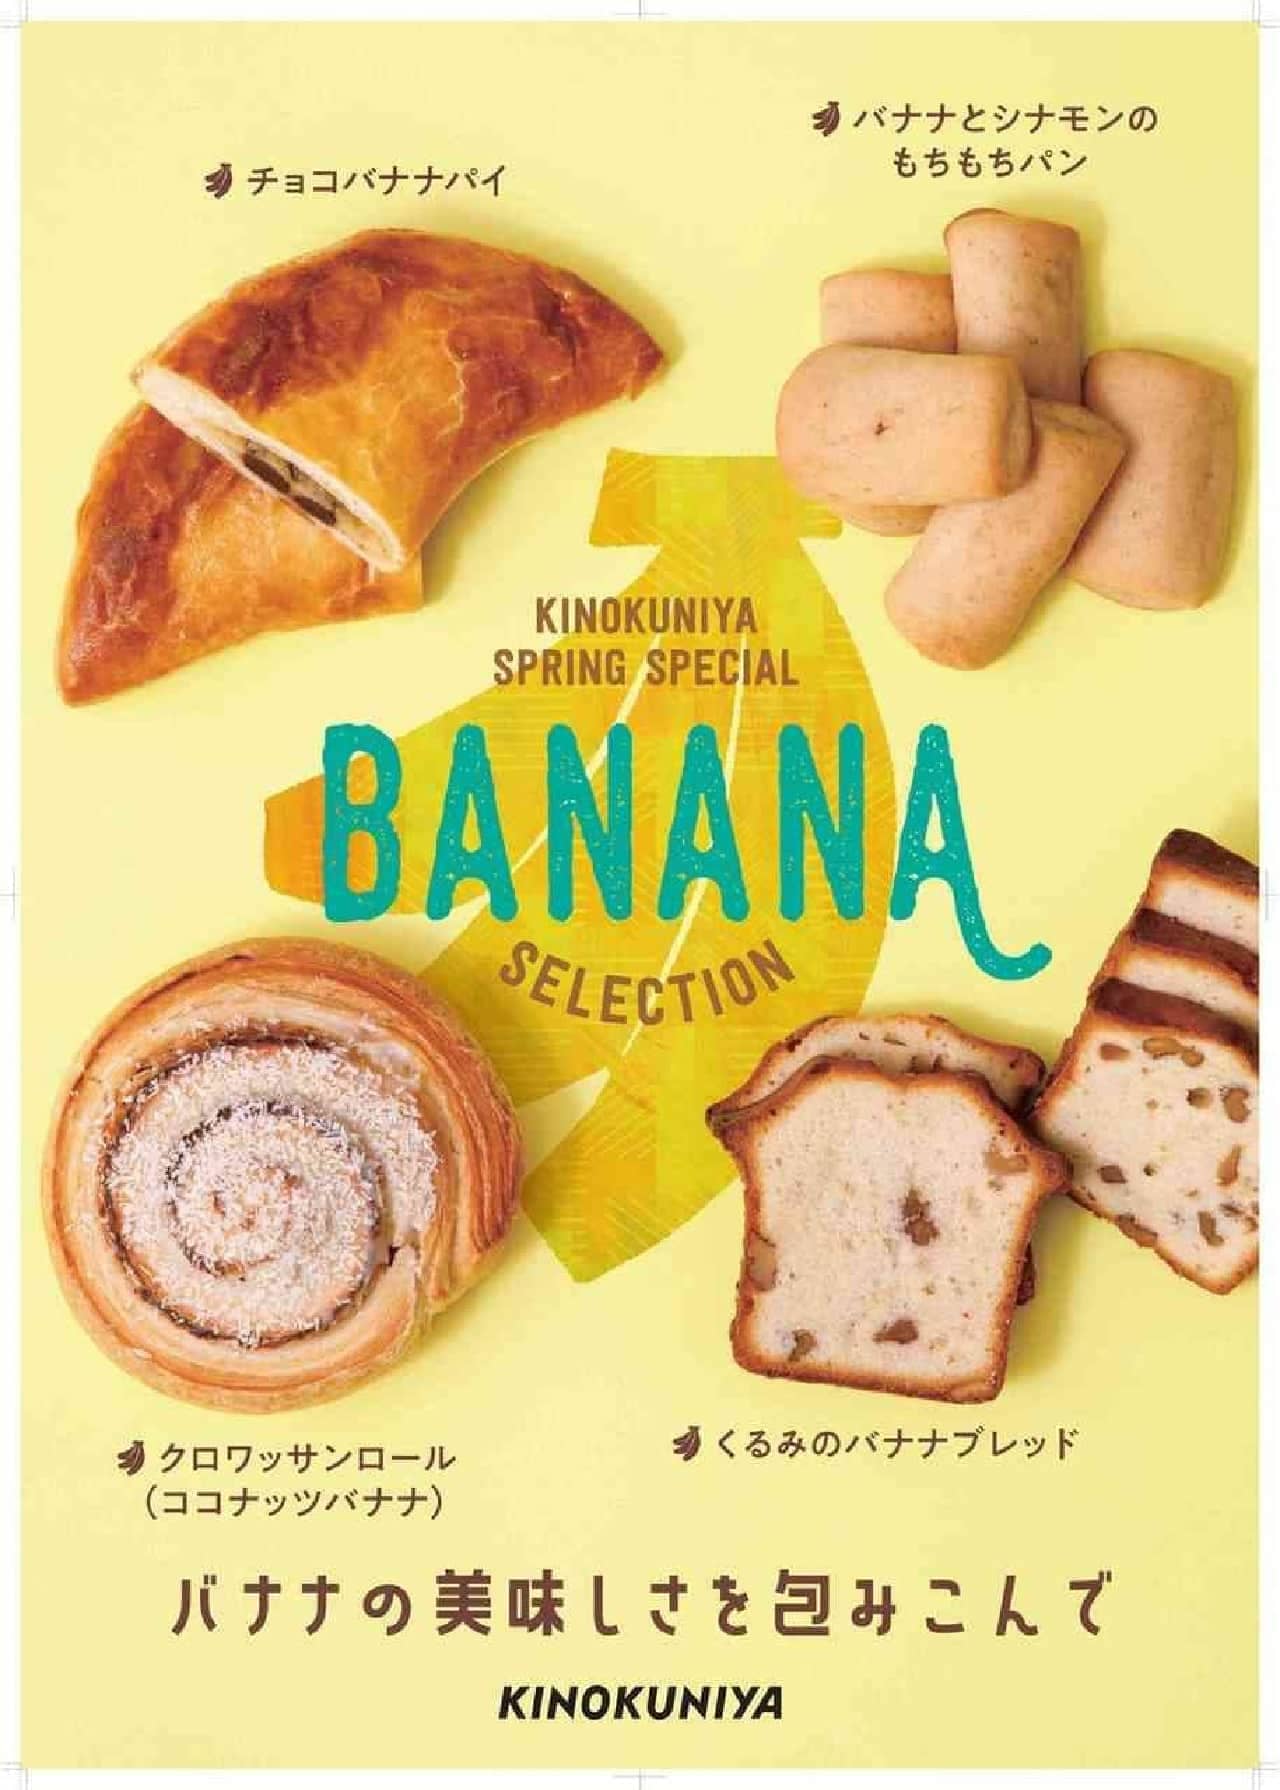 紀ノ國屋「チョコバナナパイ」などバナナのパン